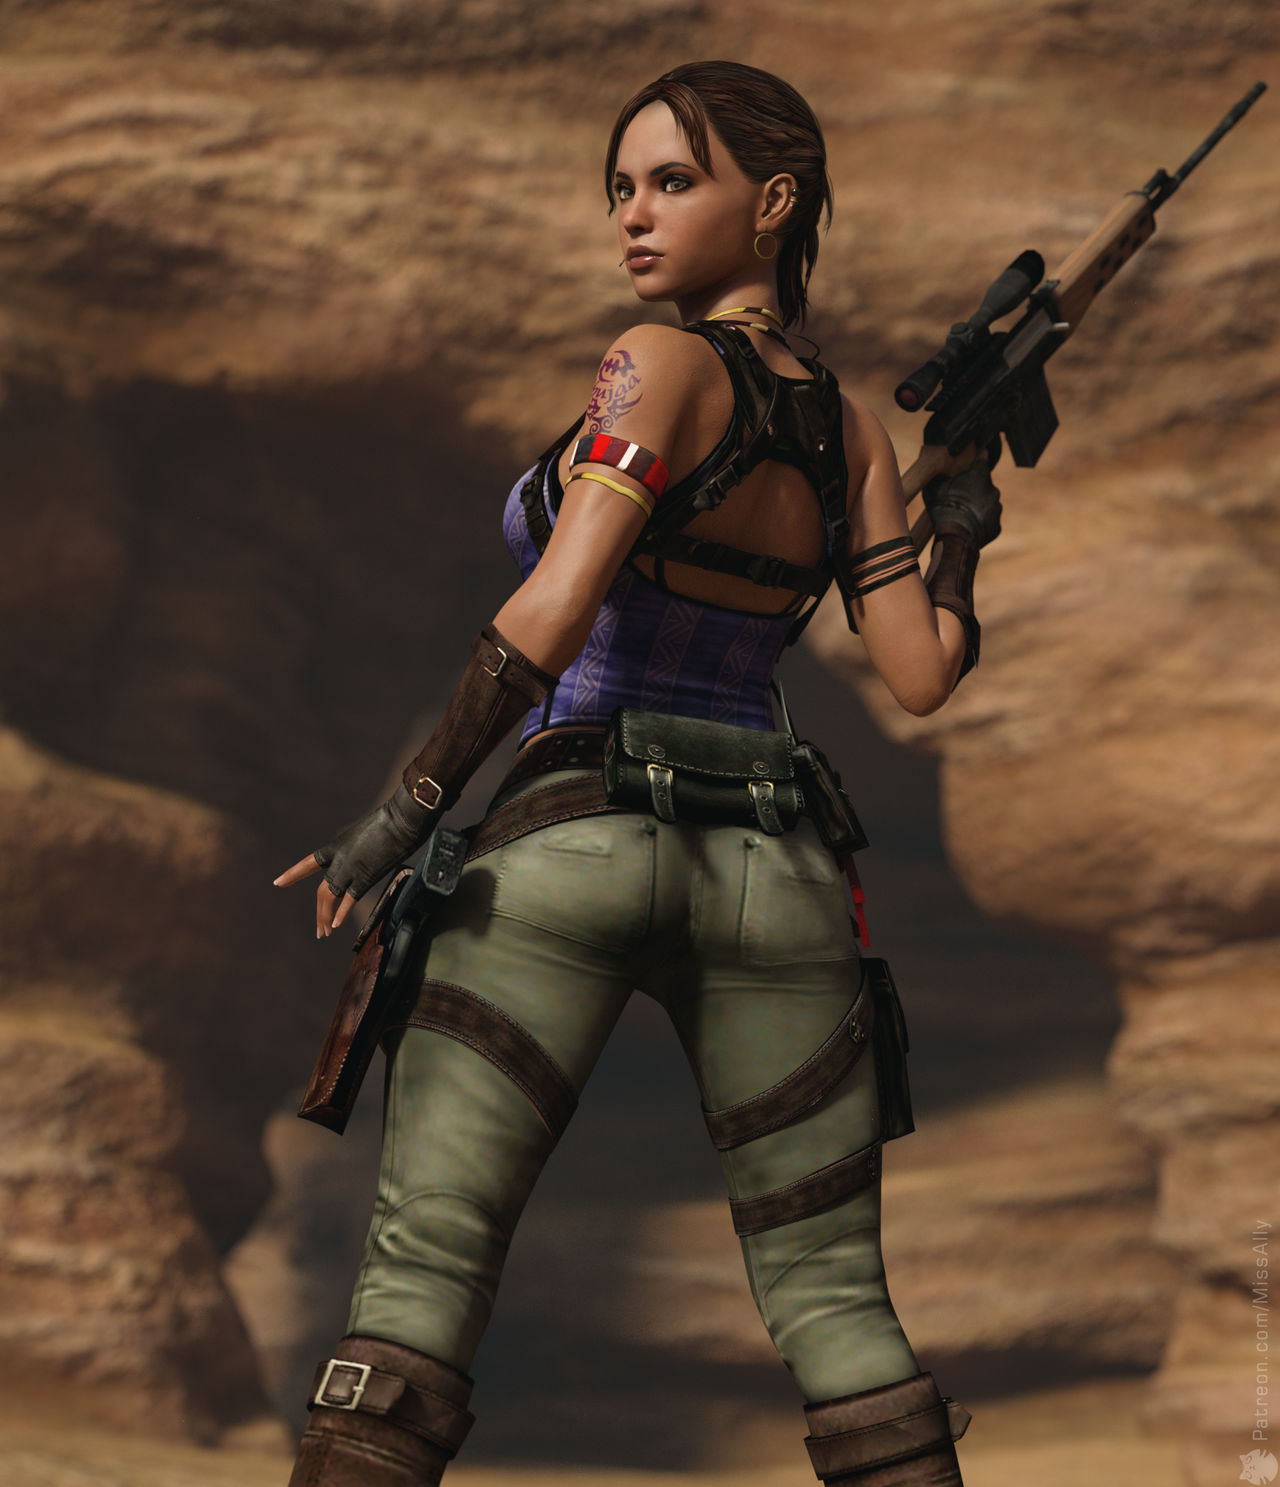 Sheva Alomar, Resident Evil